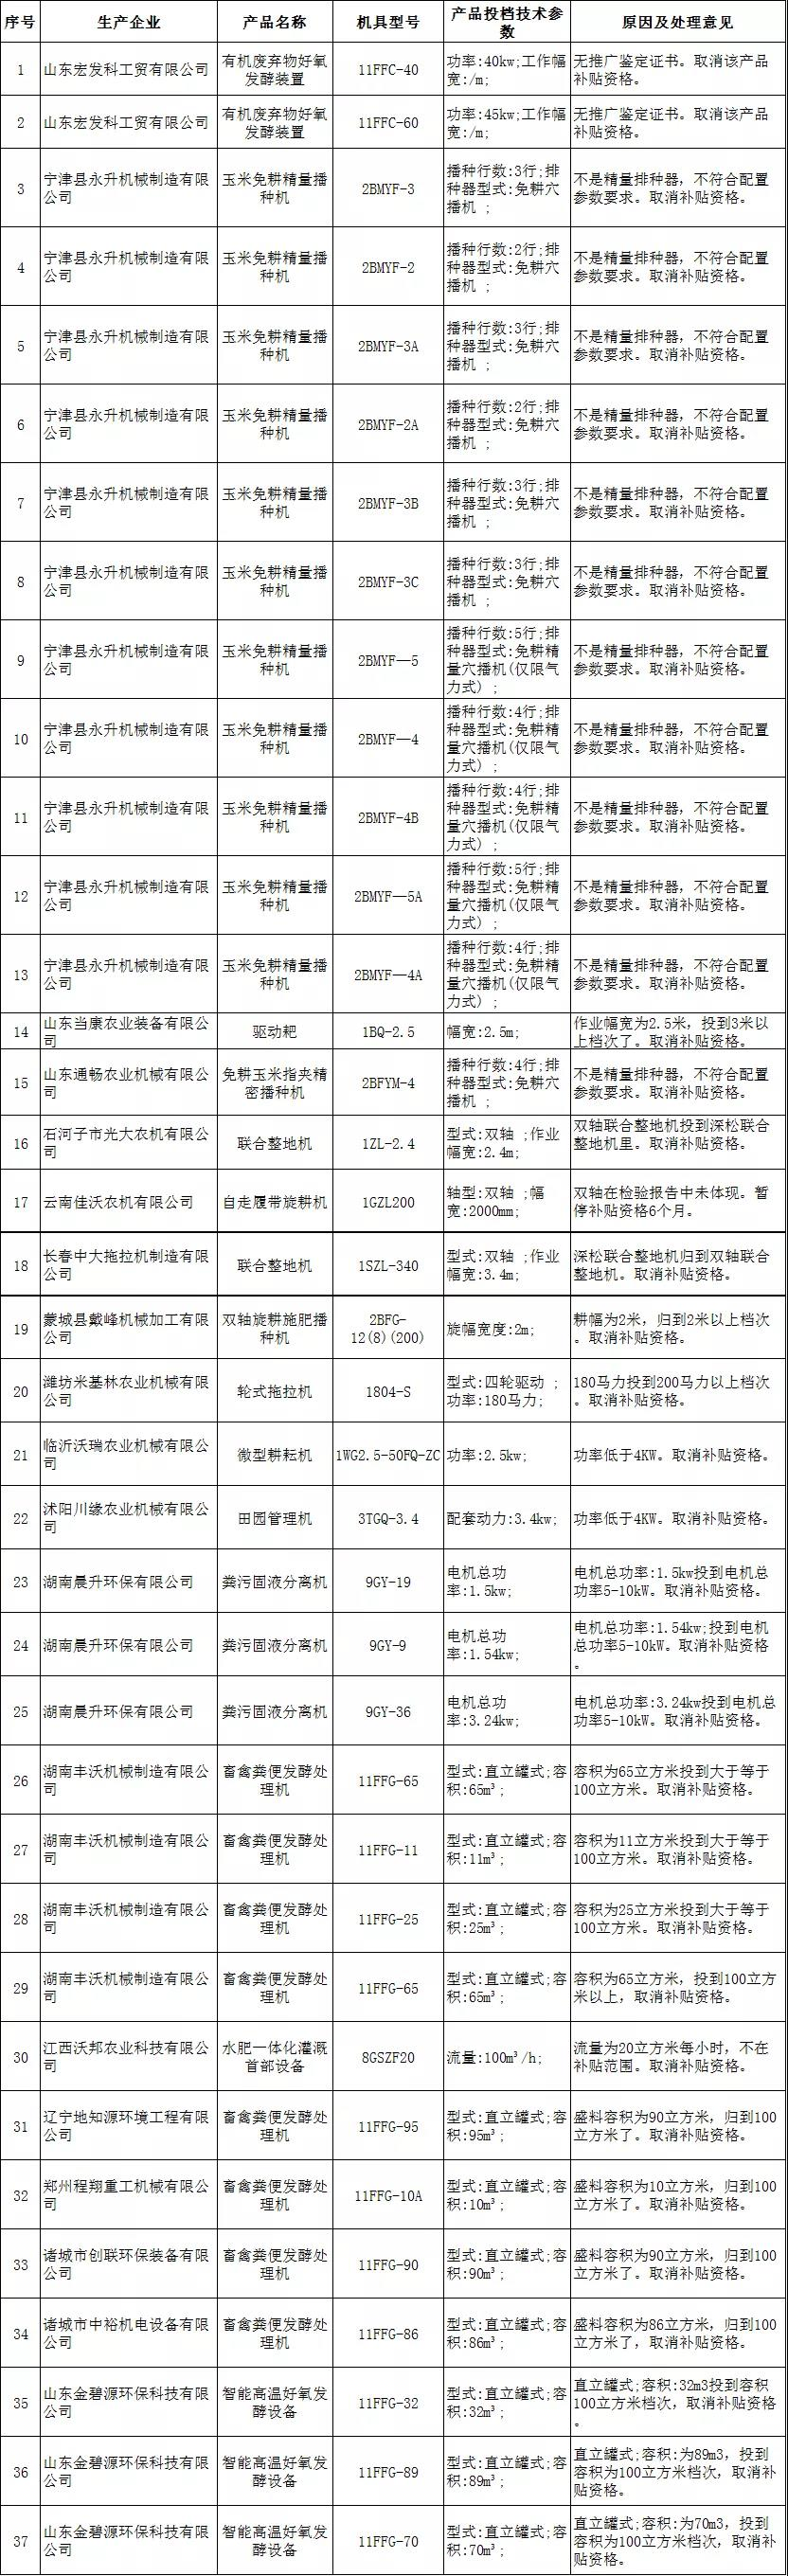 河北省对19企业37款农机补贴产品违规投档处理